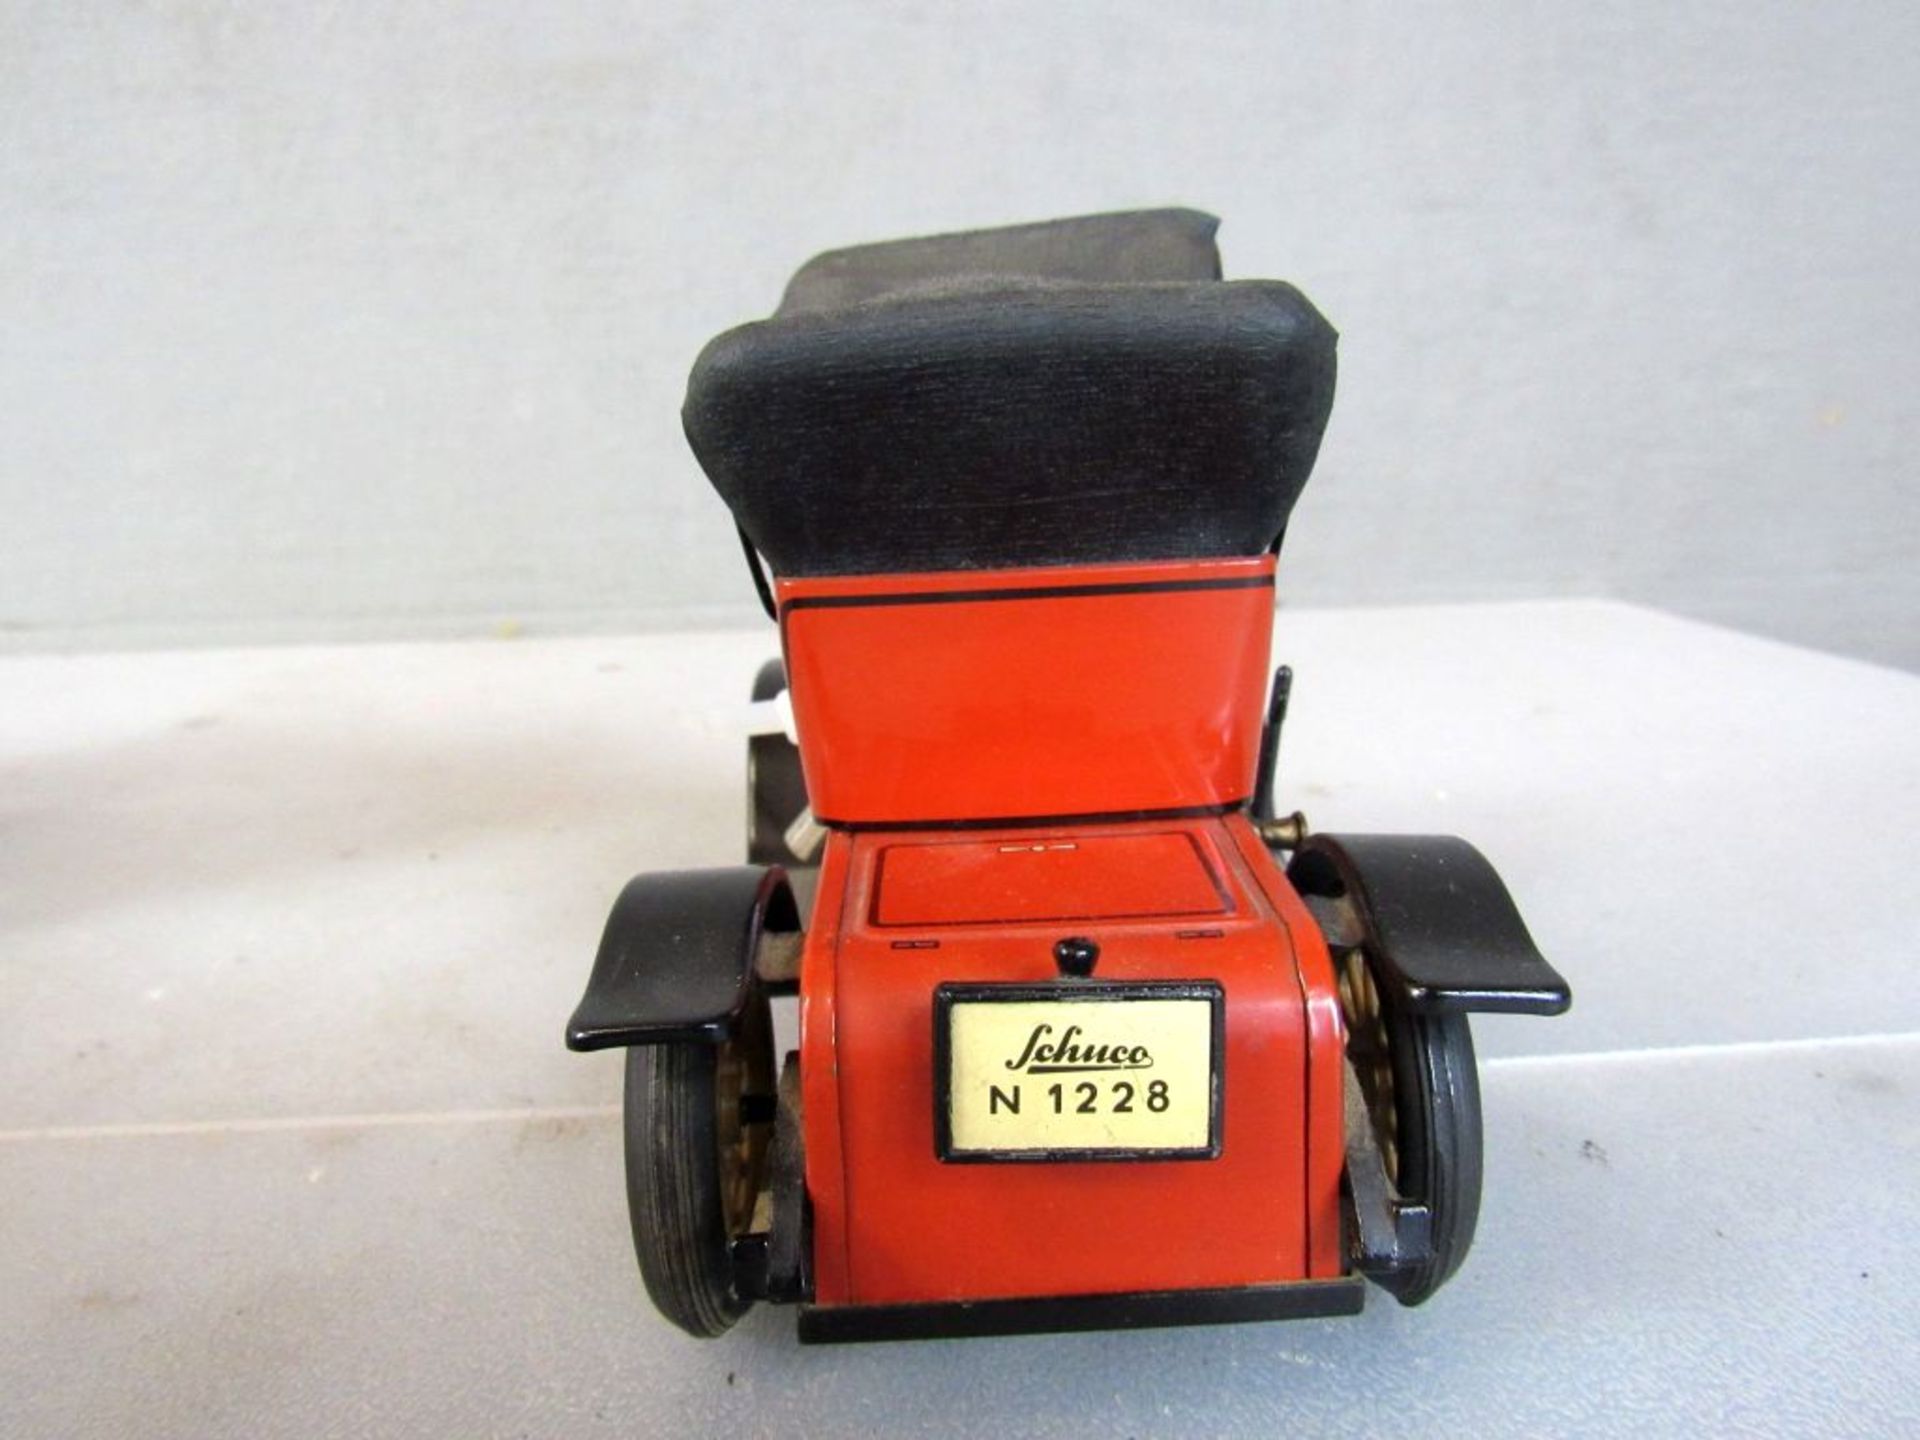 Spielzeug Schuco Modell 1228 Oldtimer - Bild 7 aus 10